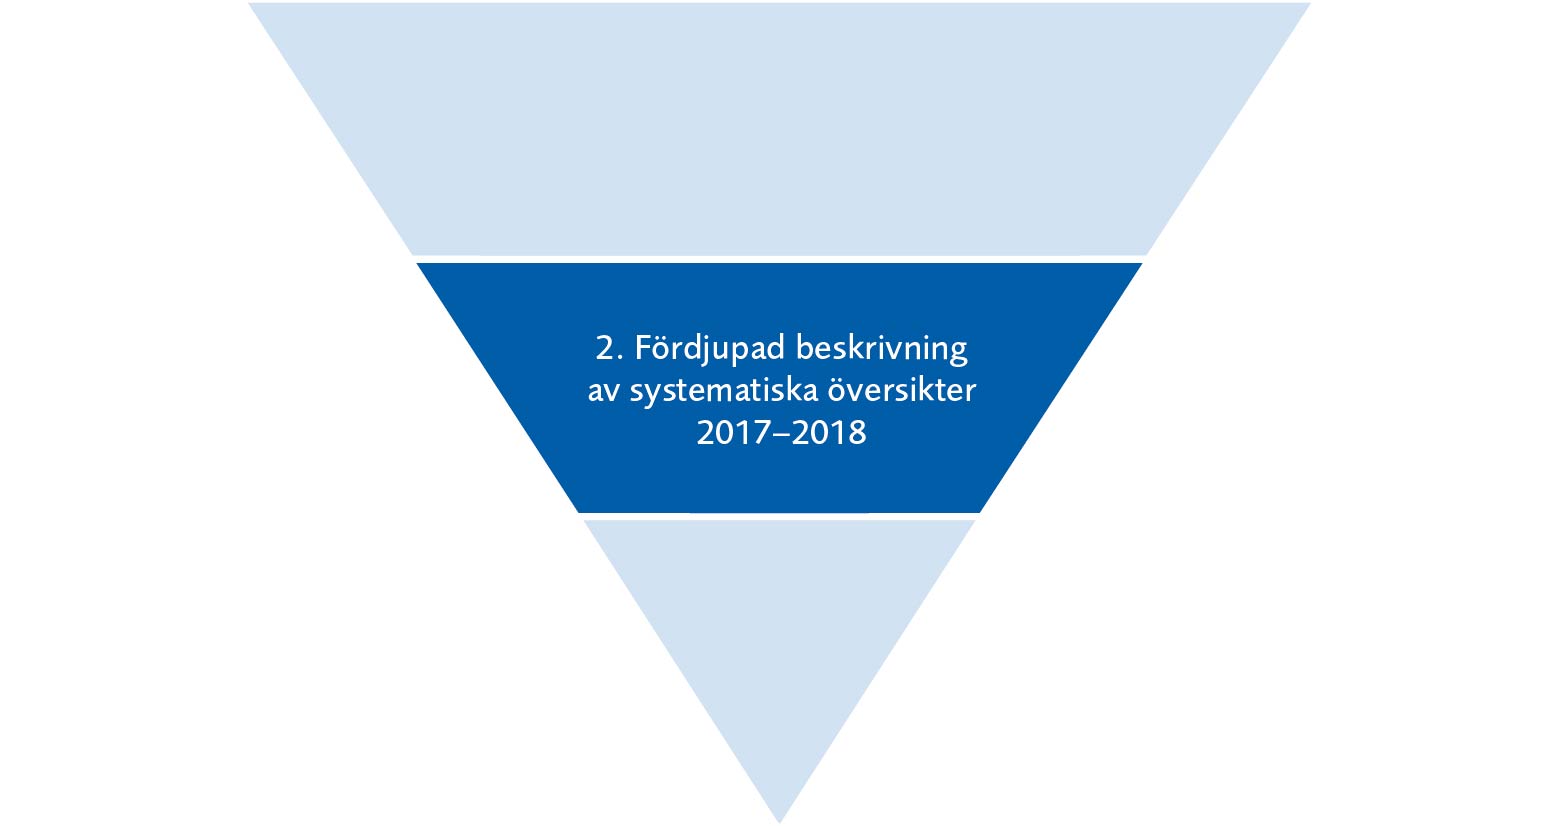 Pyramid uppdelad i tre nivåer. Nivå 2: Fördjupad beskrivning av systematiska översikter 2017-2018